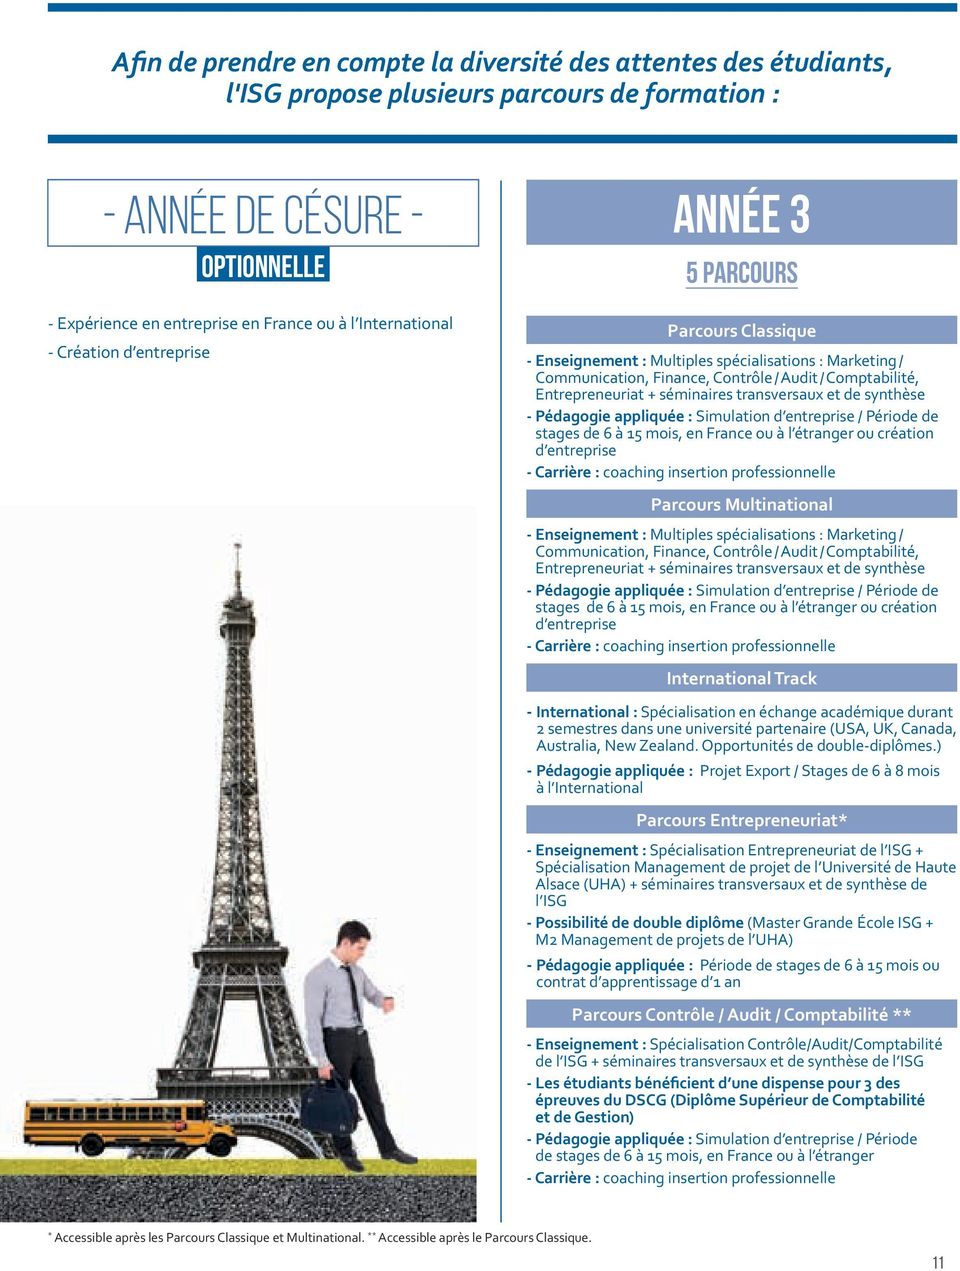 Entrepreneuriat + séminaires transversaux et de synthèse - Pédagogie appliquée : Simulation d entreprise / Période de stages de 6 à 15 mois, en France ou à l étranger ou création d entreprise -